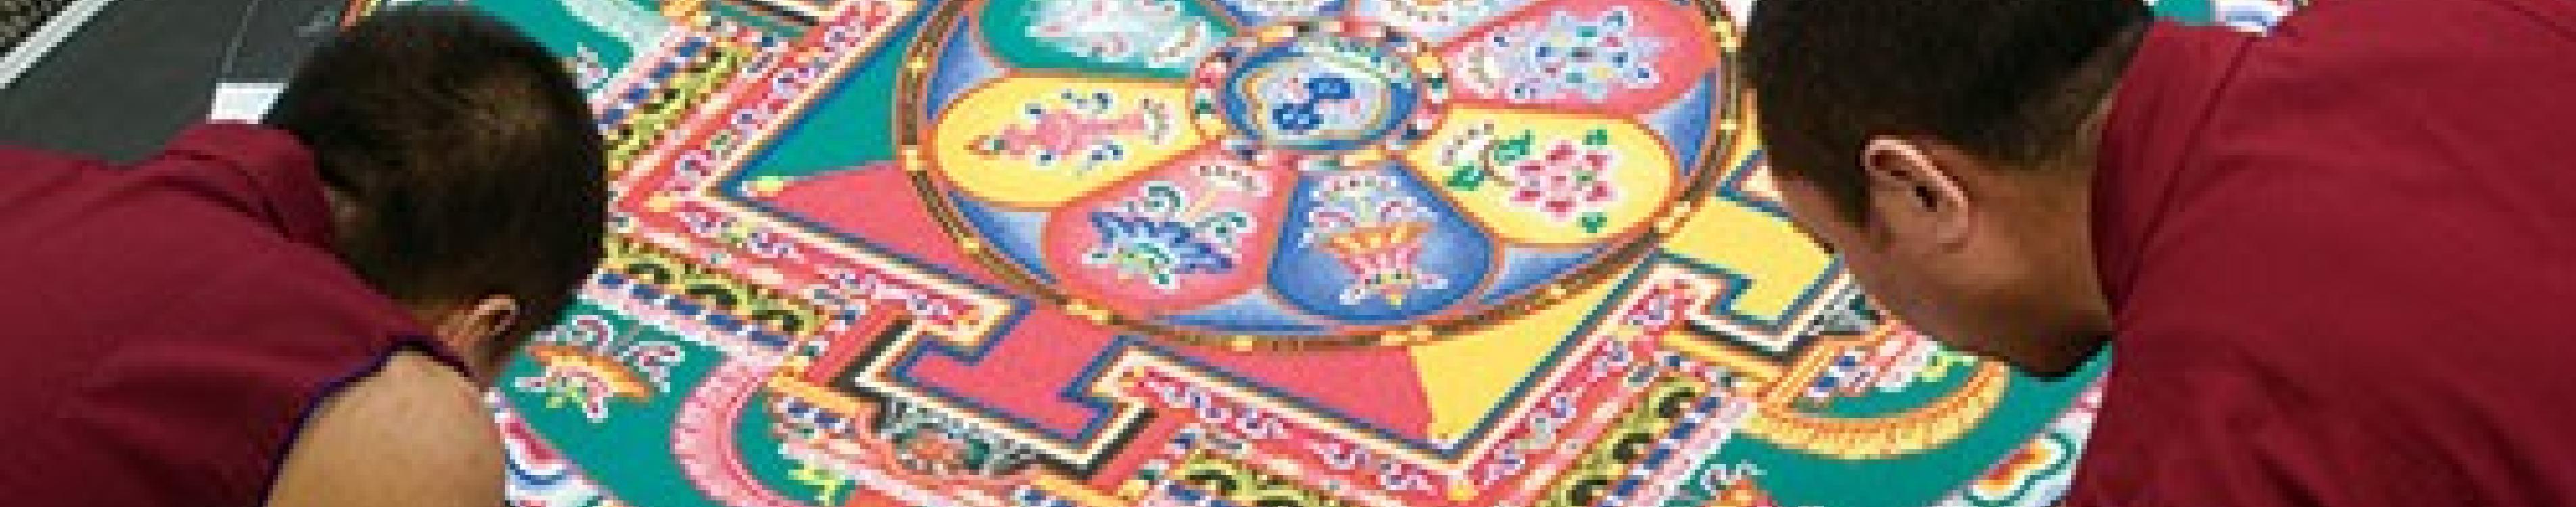 lrg_tibetan-monks-ps-visit-2009-5-sml.jpg